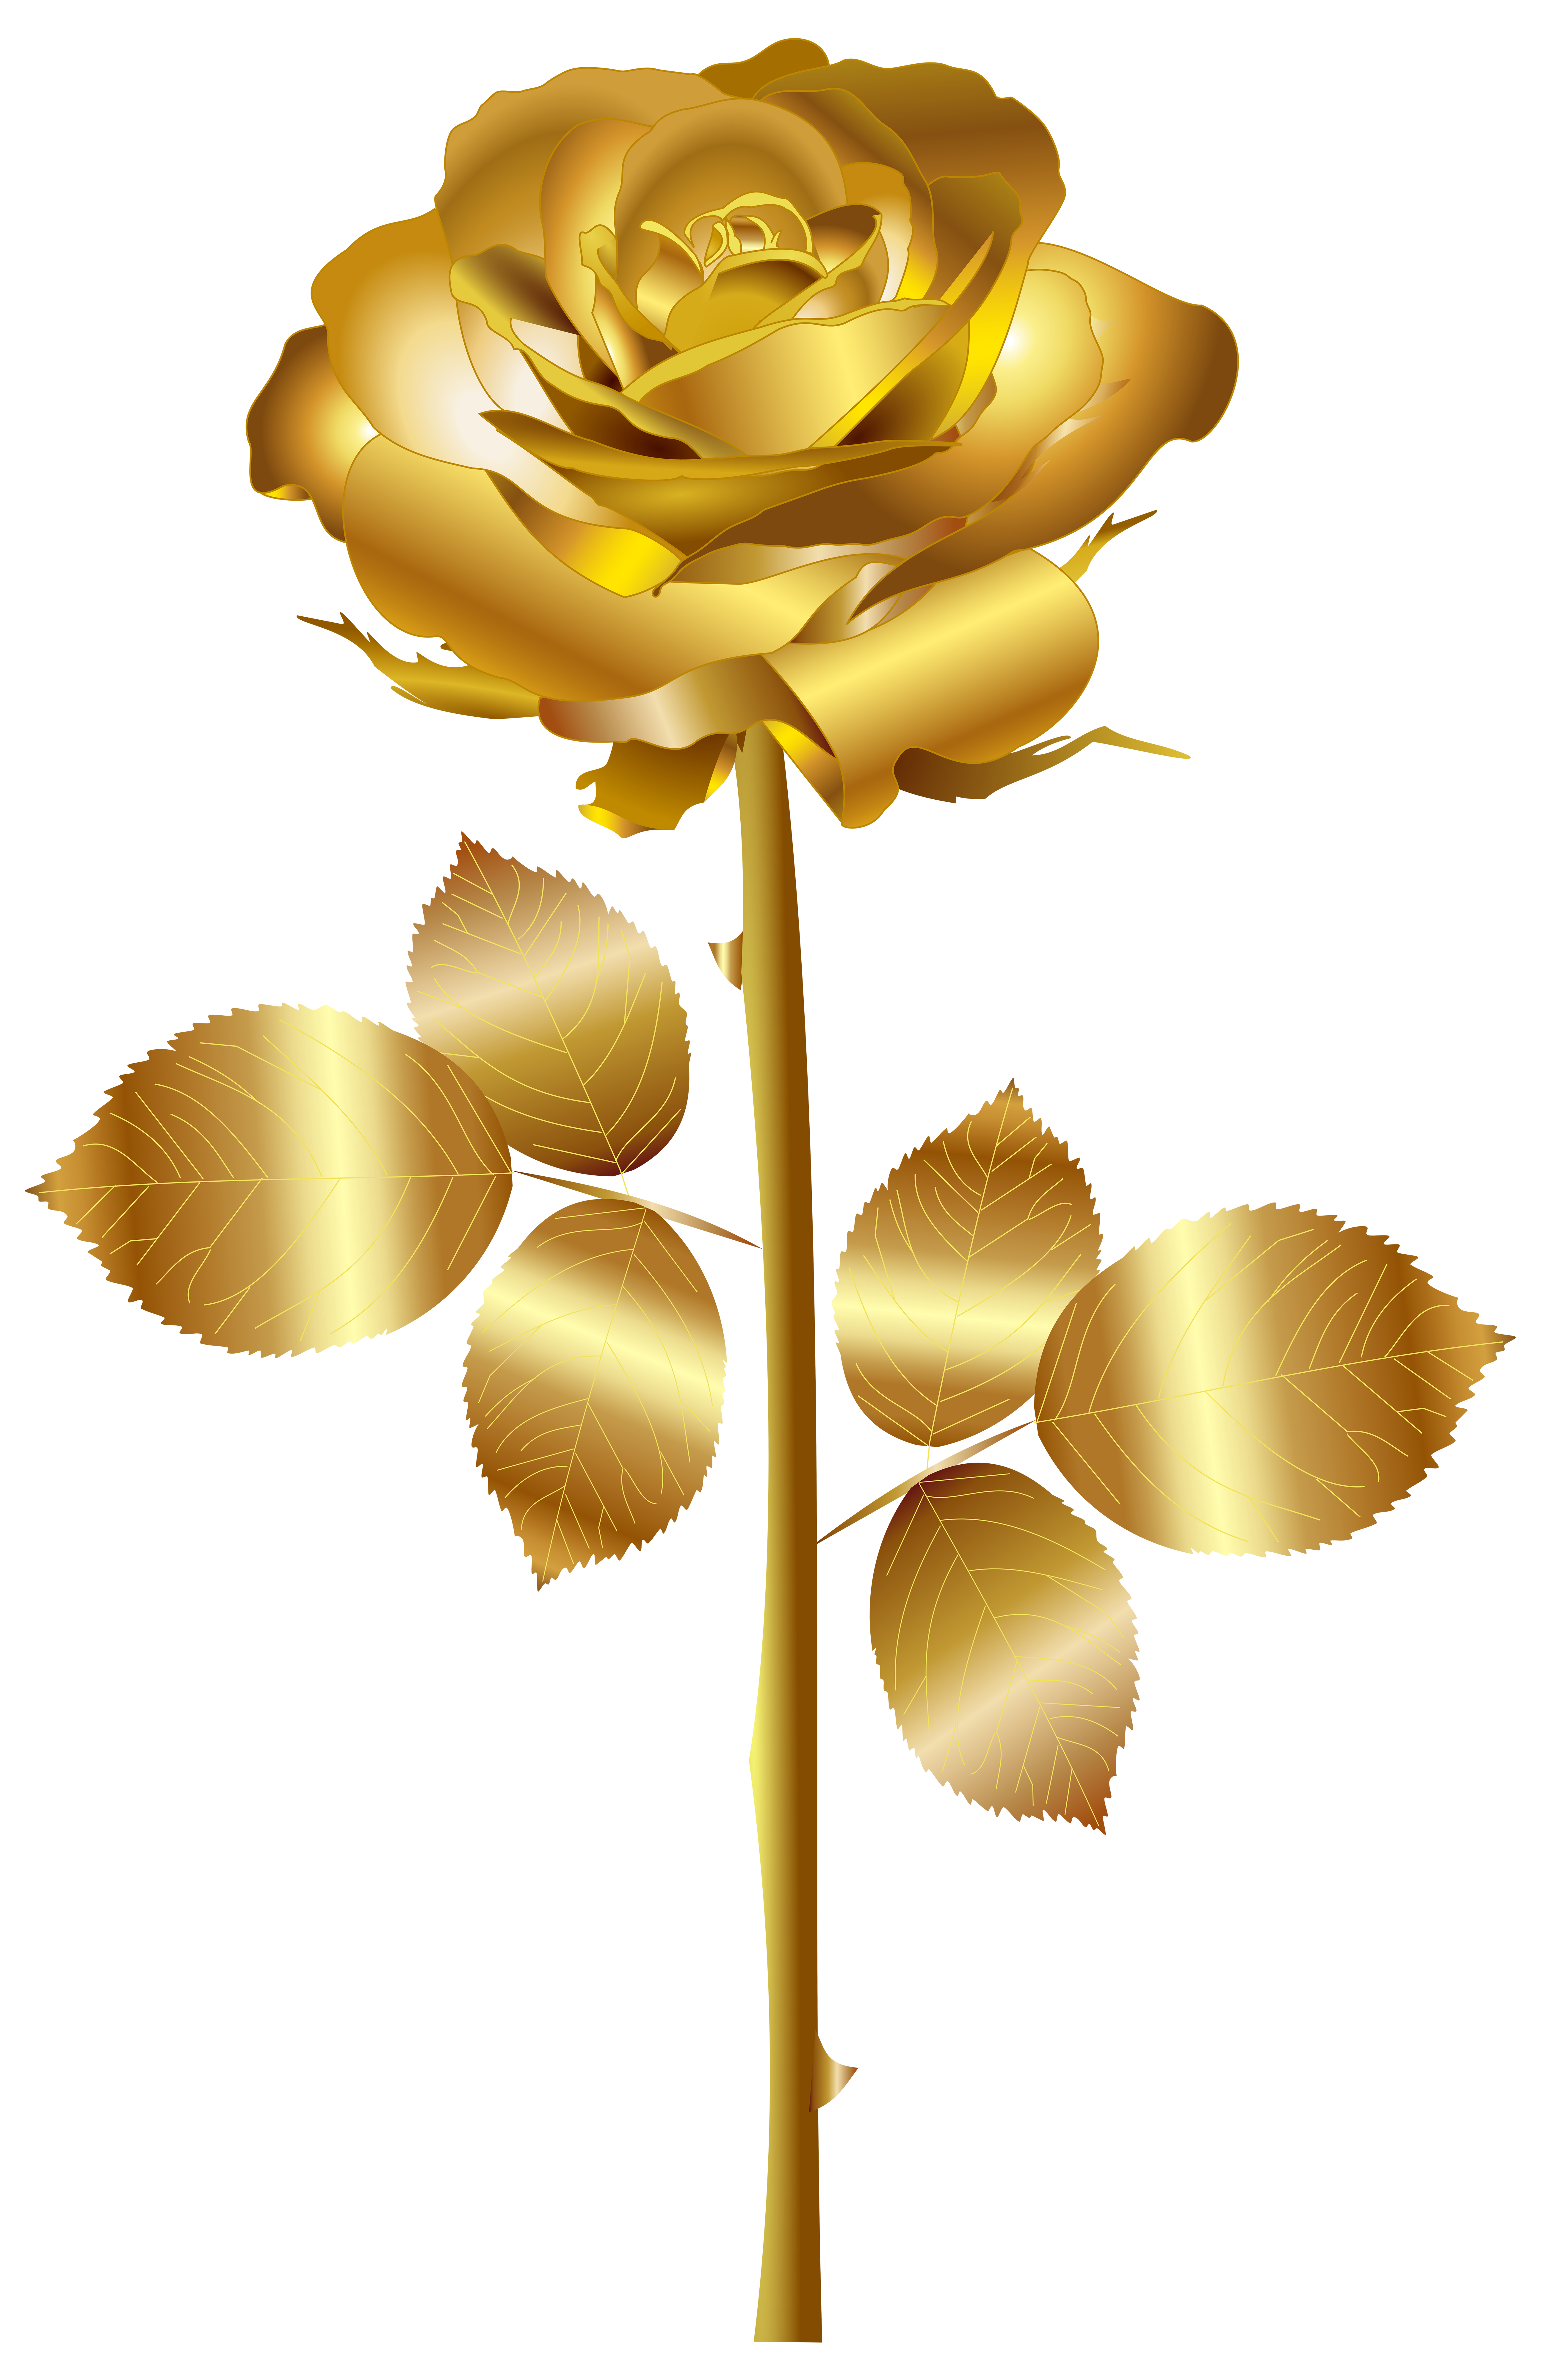 Gold Rose PNG Clip Art Image.